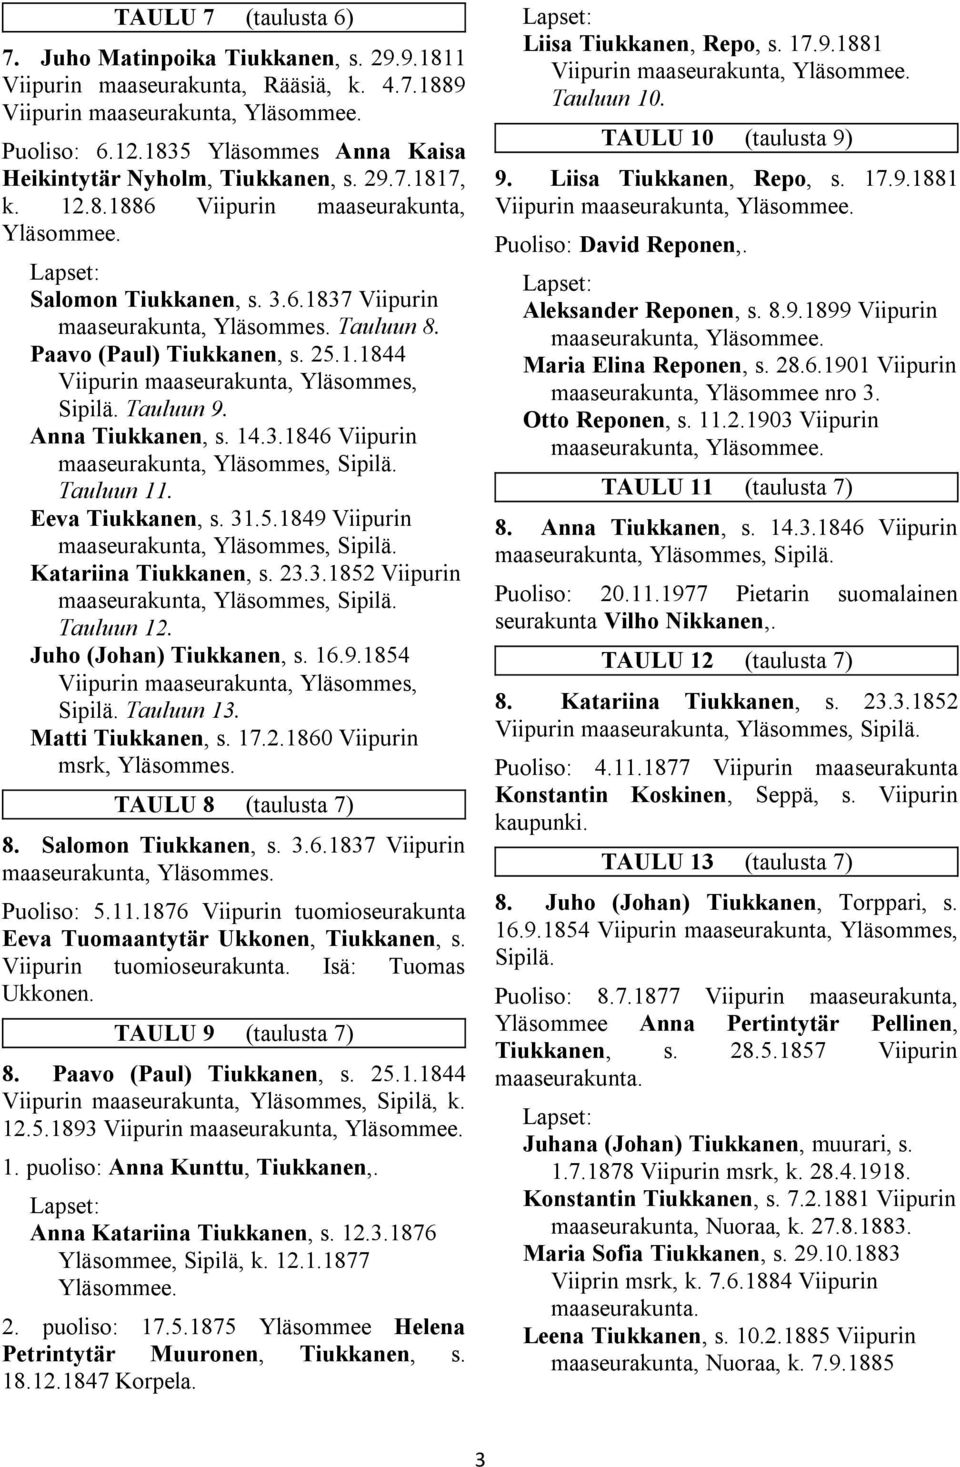 Paavo (Paul) Tiukkanen, s. 25.1.1844 Viipurin maaseurakunta, Yläsommes, Sipilä. Tauluun 9. Anna Tiukkanen, s. 14.3.1846 Viipurin maaseurakunta, Yläsommes, Sipilä. Tauluun 11. Eeva Tiukkanen, s. 31.5.1849 Viipurin maaseurakunta, Yläsommes, Sipilä.